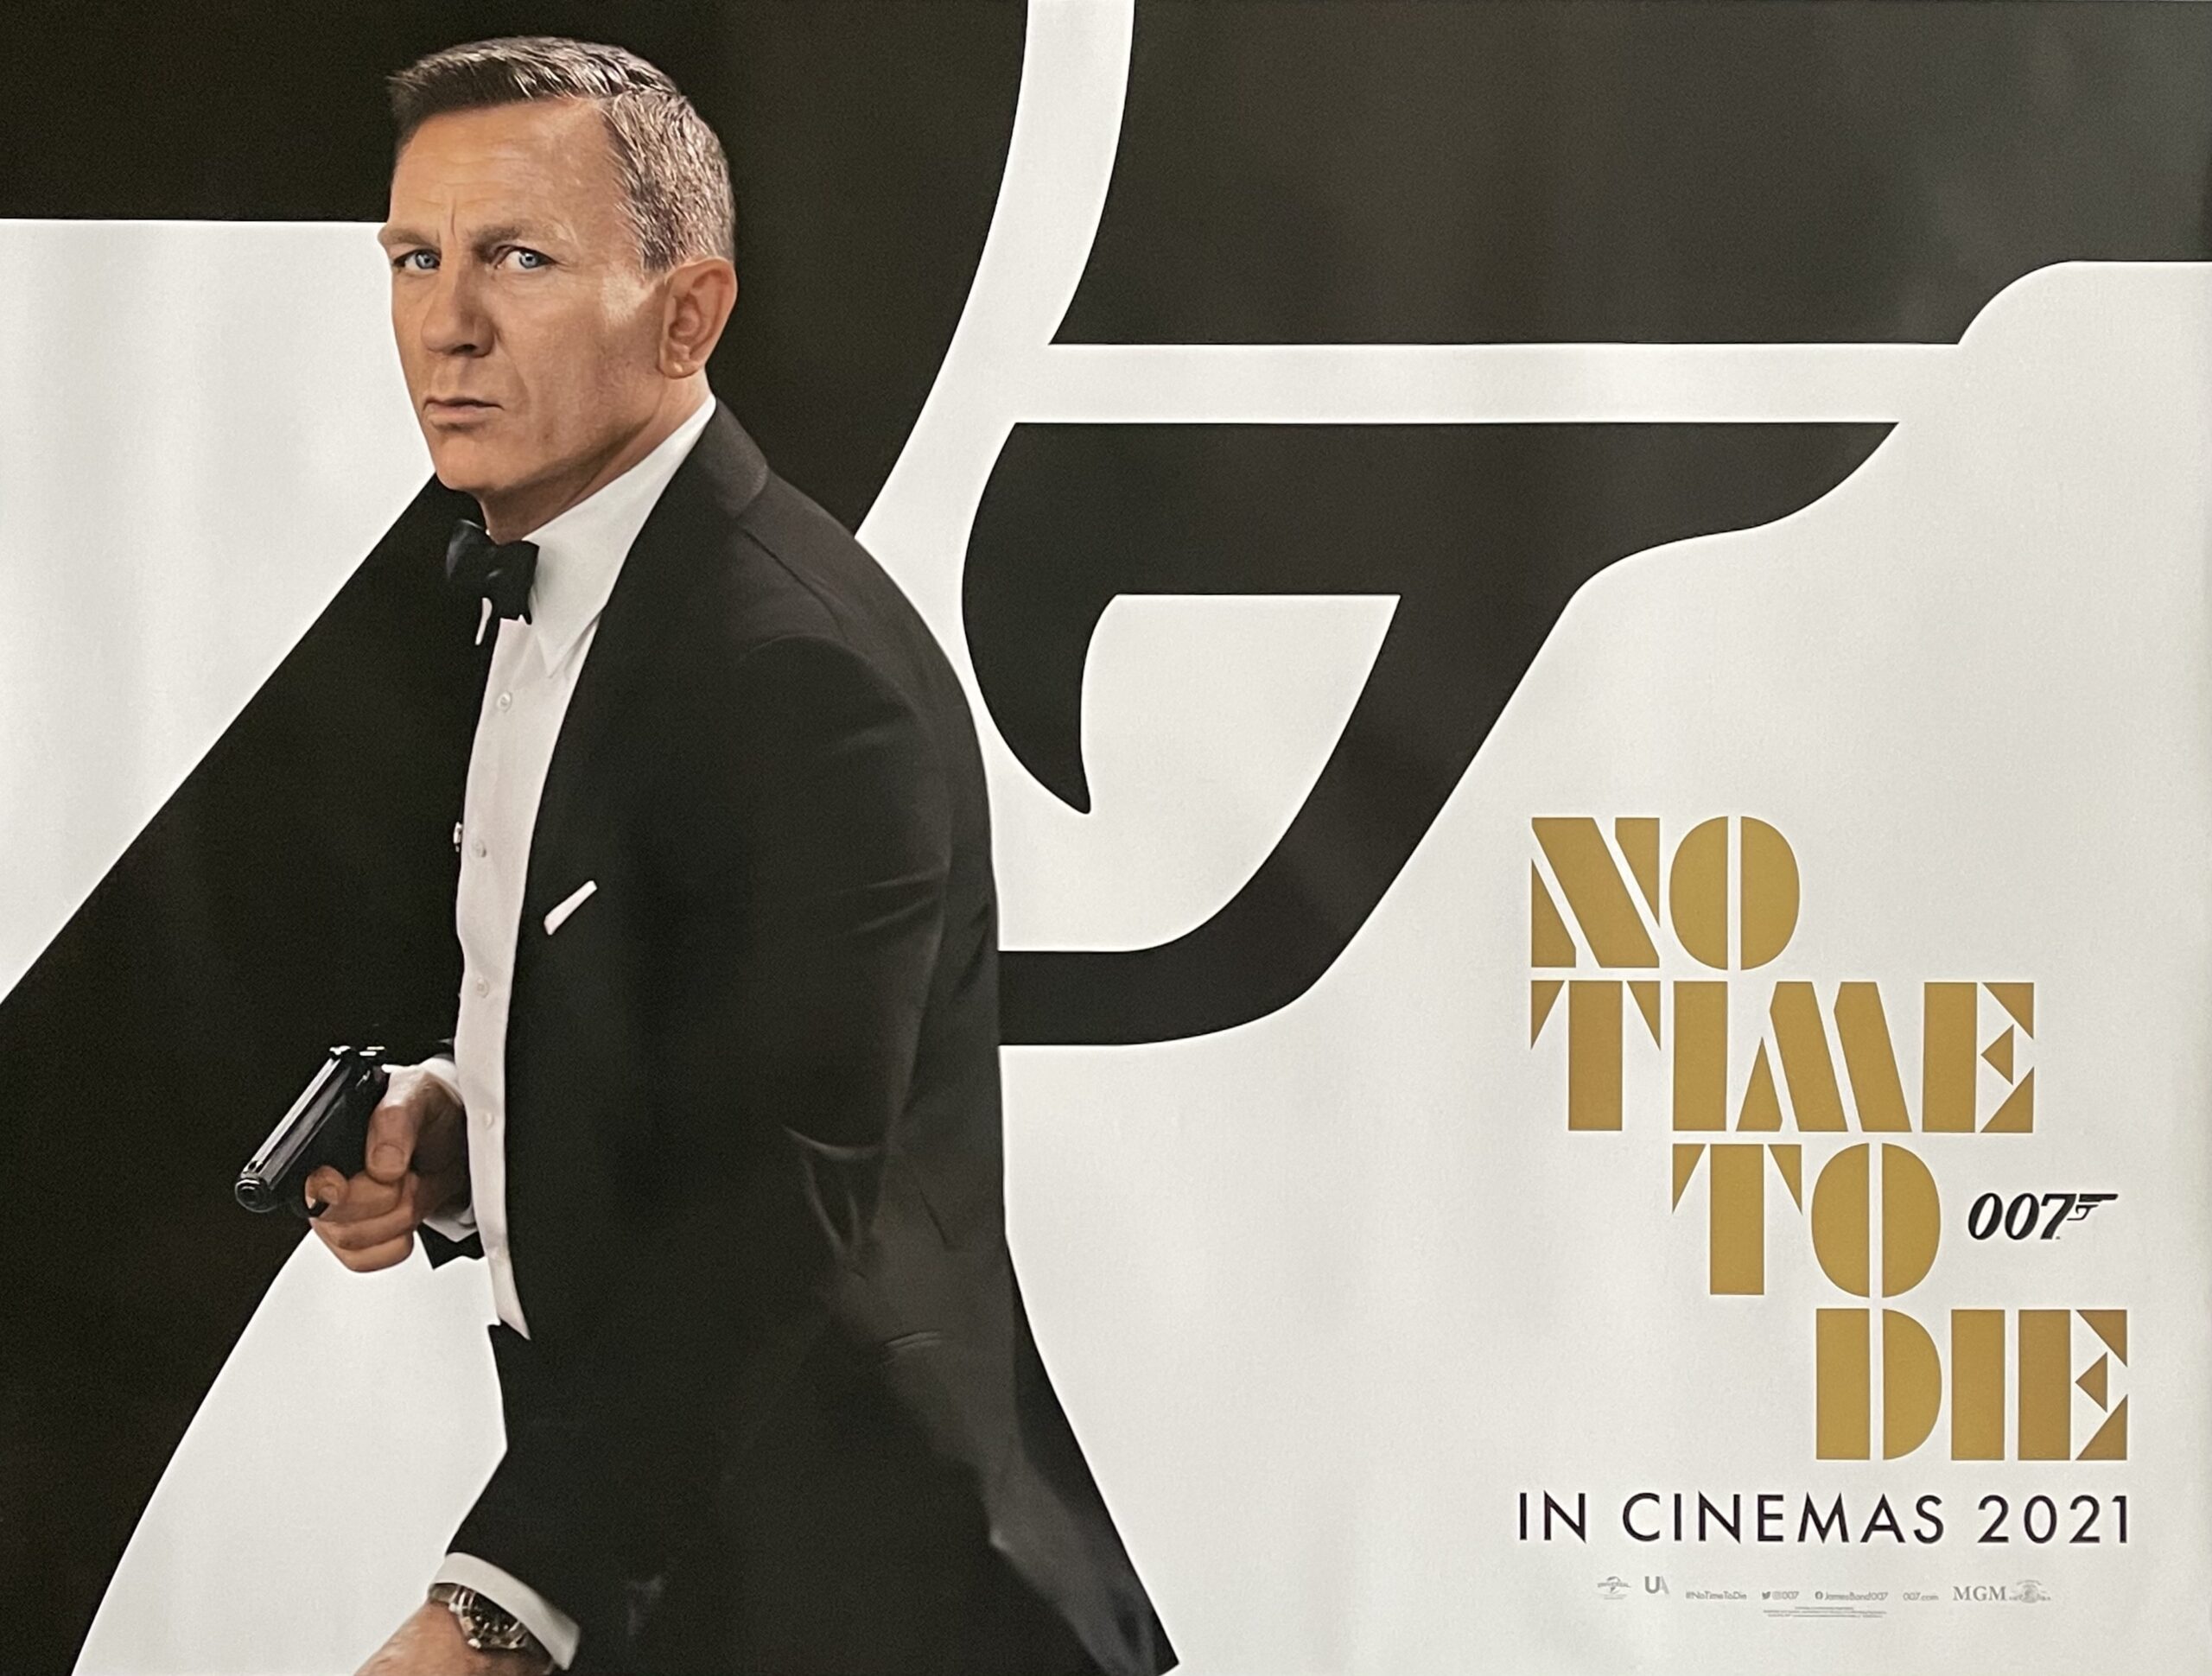 Finaliza Una Etapa Cinematográfica En La Historia De James Bond Puro Cine Y Algo Mas